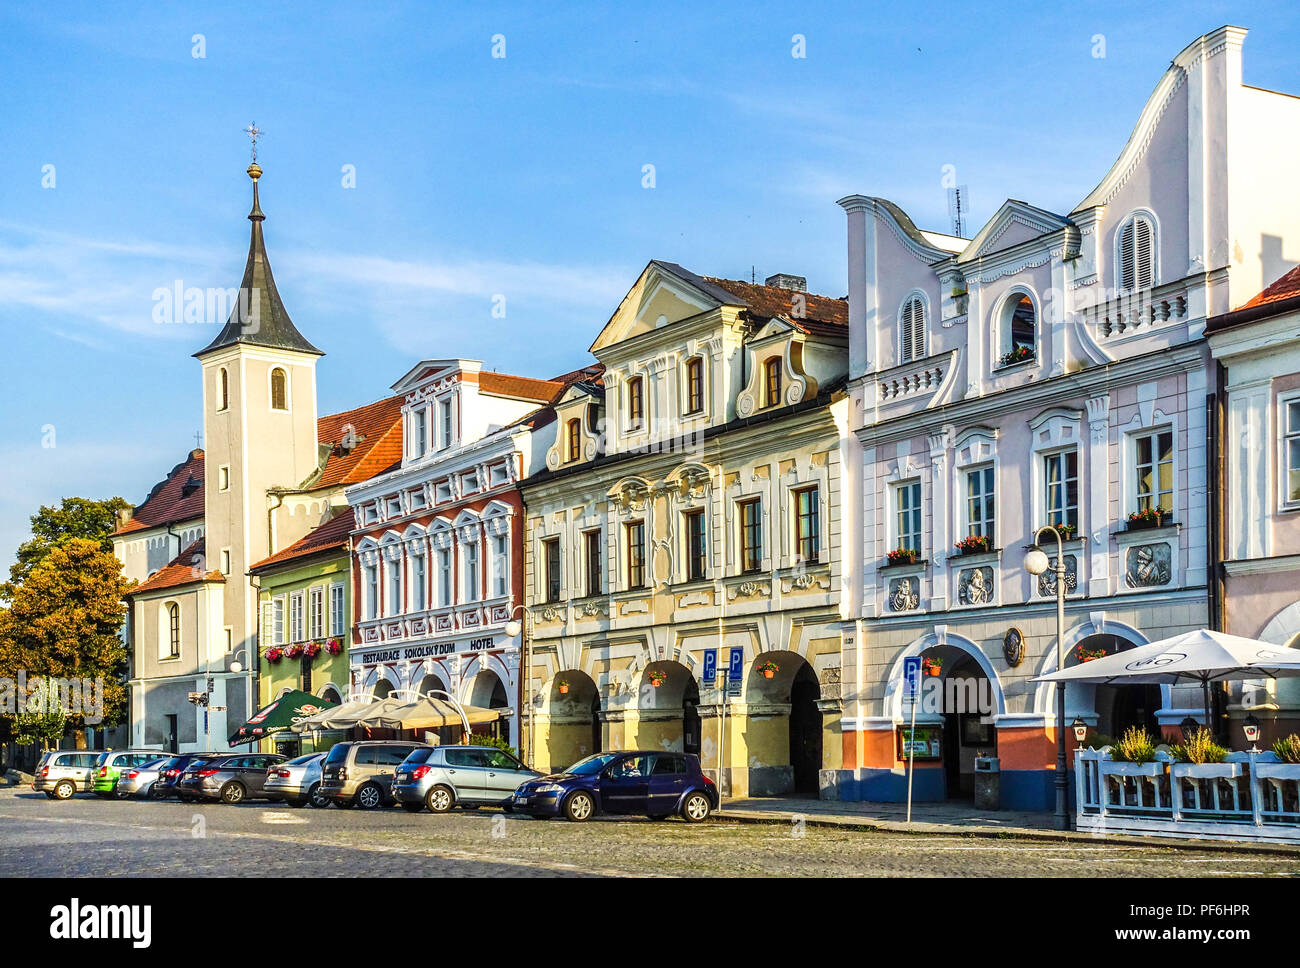 Maisons historique baroque et clocher de l'Église sur la place principale, Domazlice, République Tchèque Banque D'Images